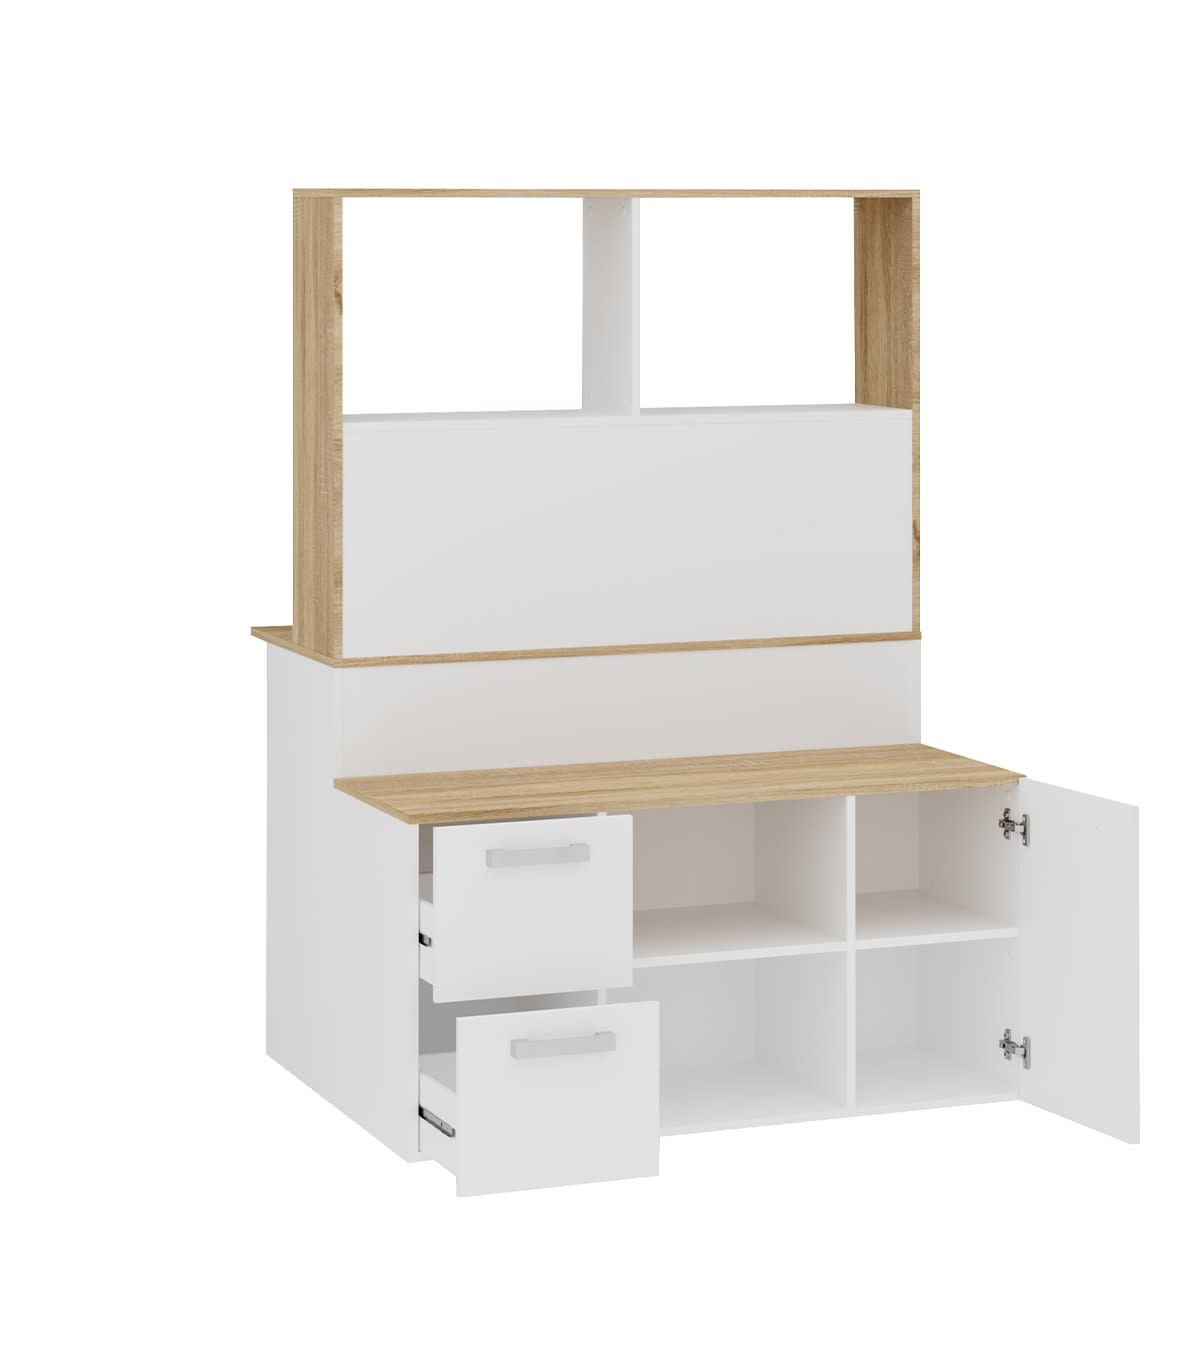 Bureau avec étagère intégrée coloris blanc artic / chêne canadien